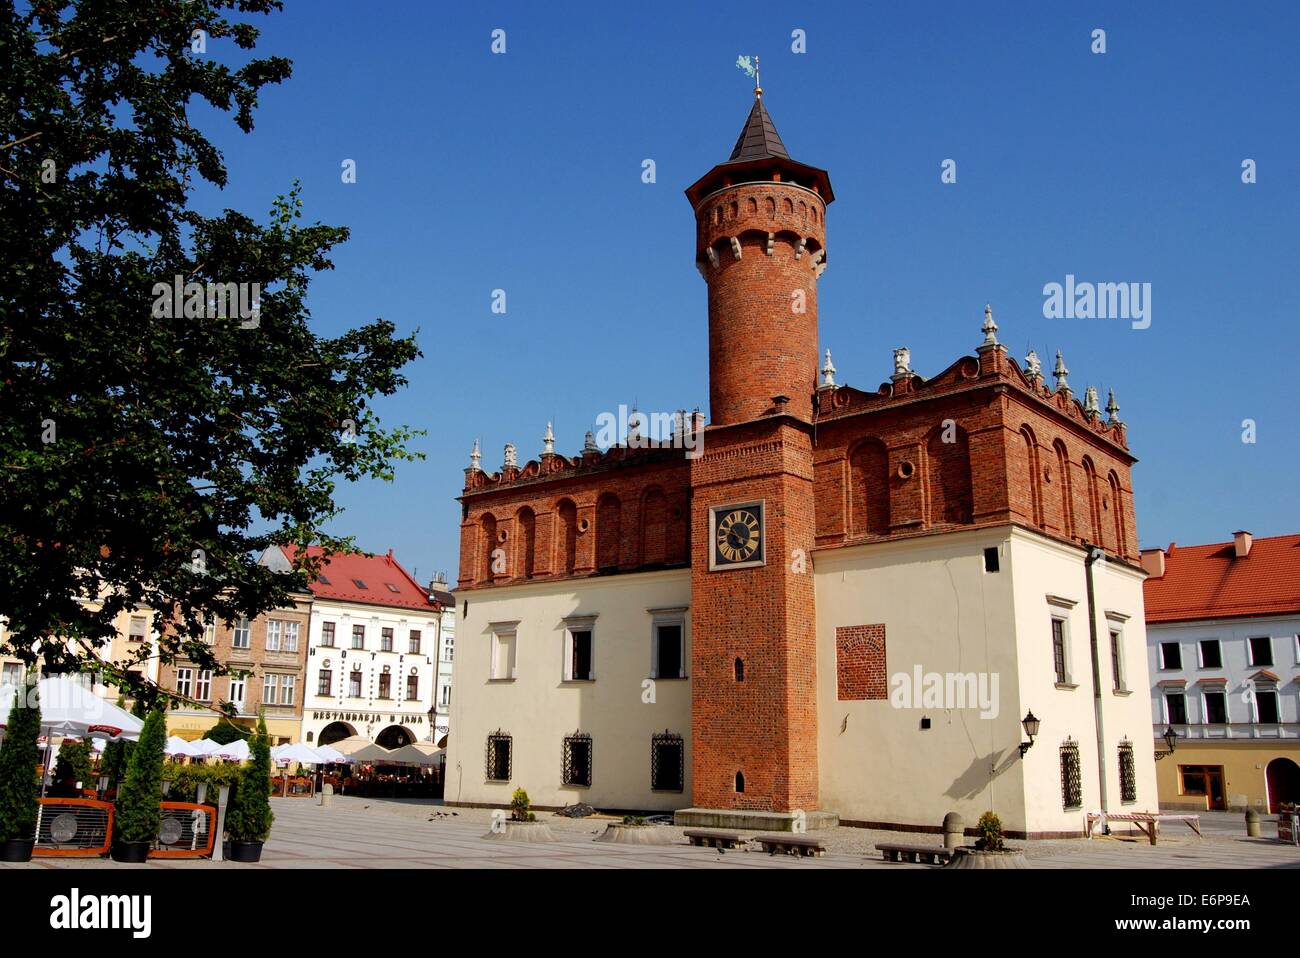 TARNÓW, Polen: Der imposante Renaissance-Stil Ratusz (Rathaus) mit dem mittelalterlichen Turm sitzt auf dem Marktplatz Rynek Stockfoto